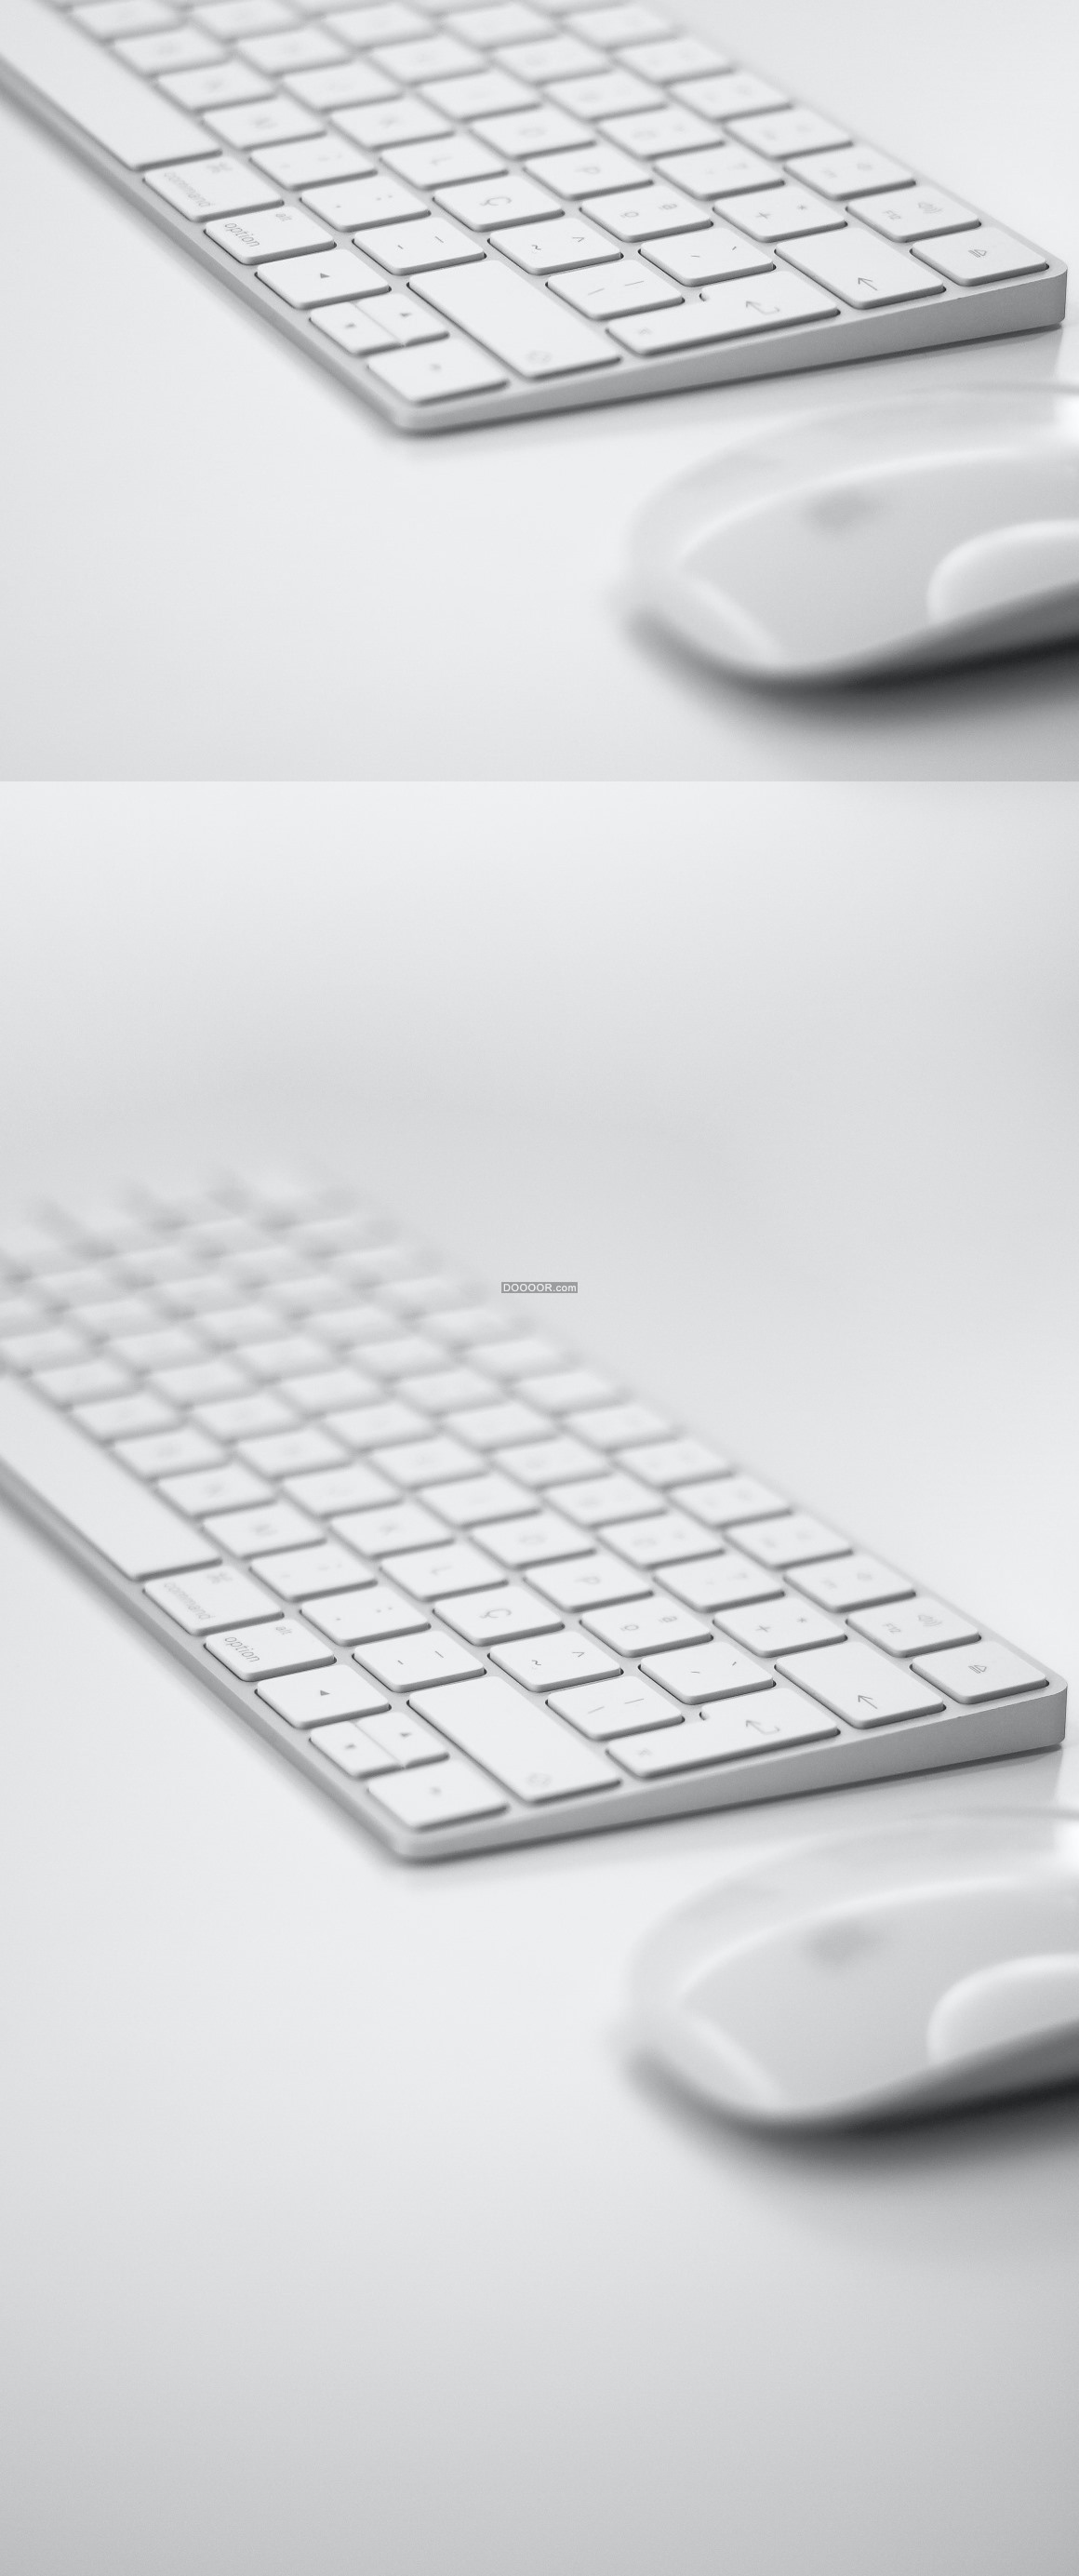 键盘背景图白色图片